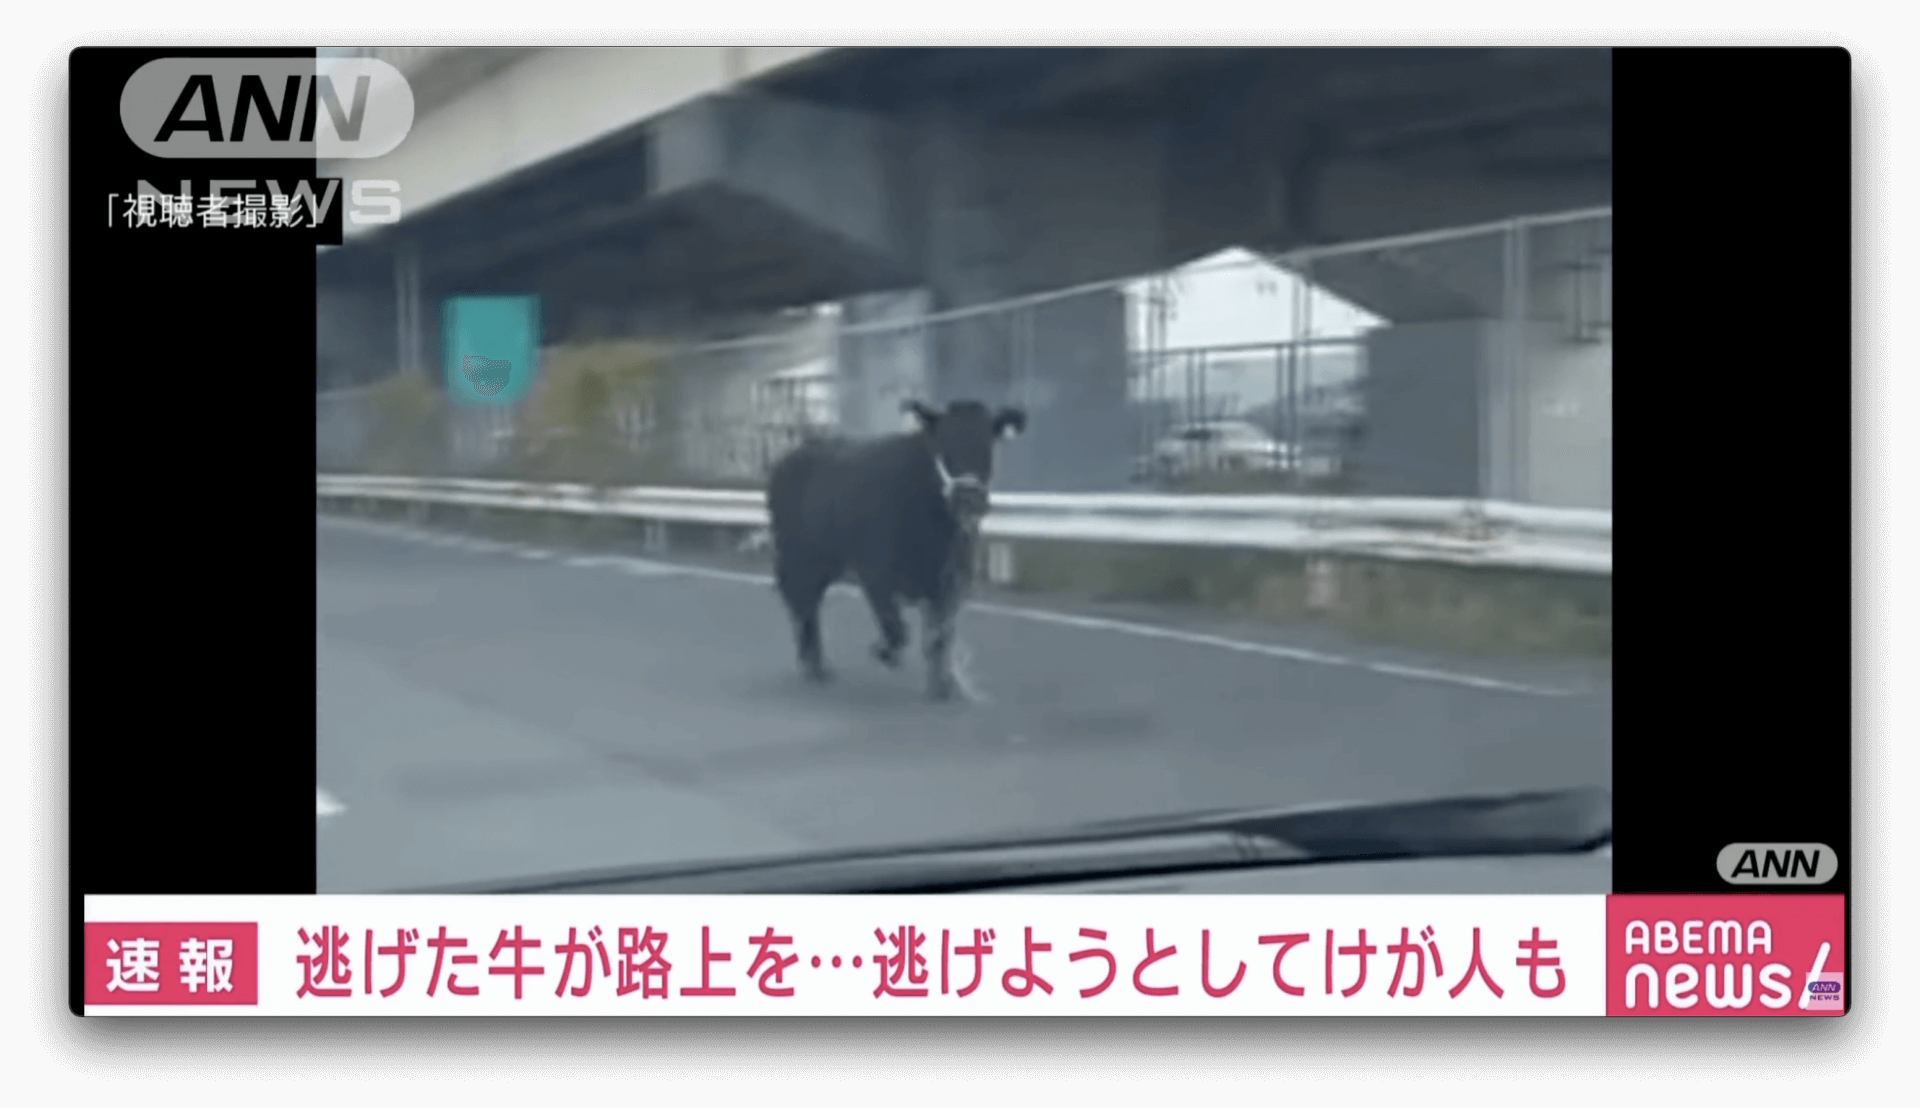 Boi escapa durante transferência de caminhão e fere 4 pessoas no Japão